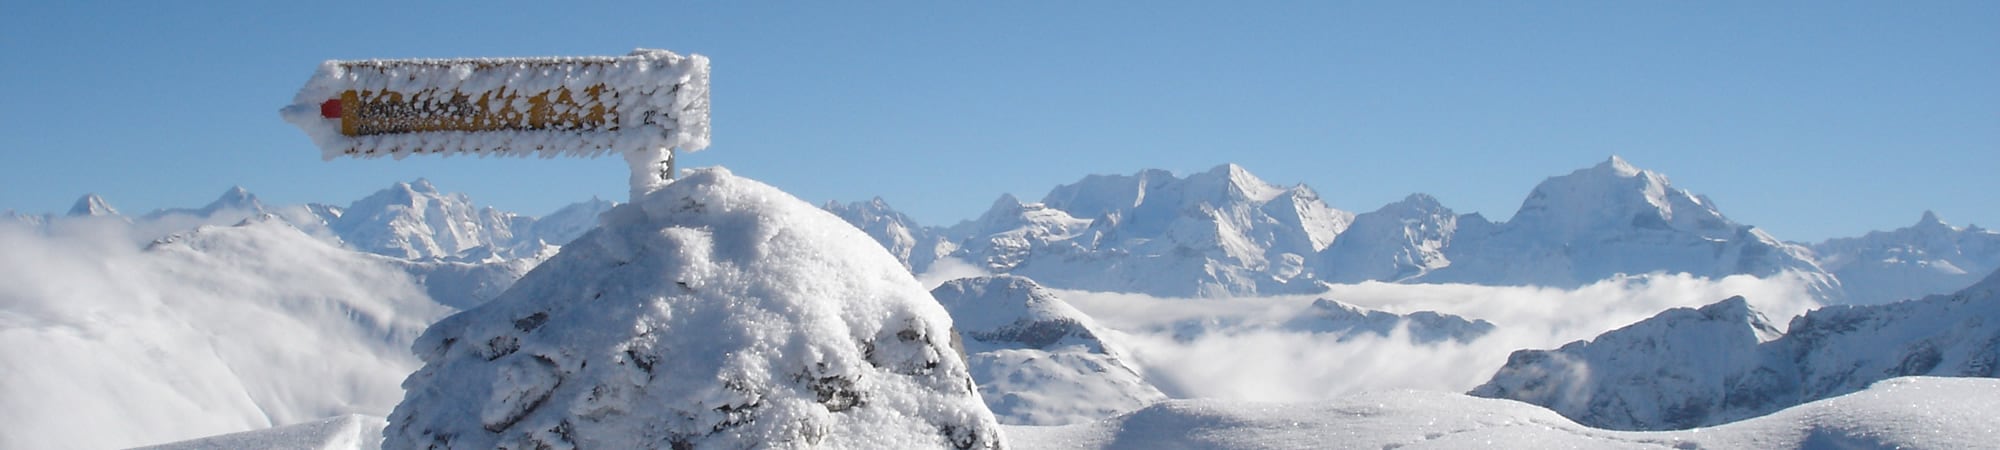 Wir kennen die schönsten Orte im Berner Oberland